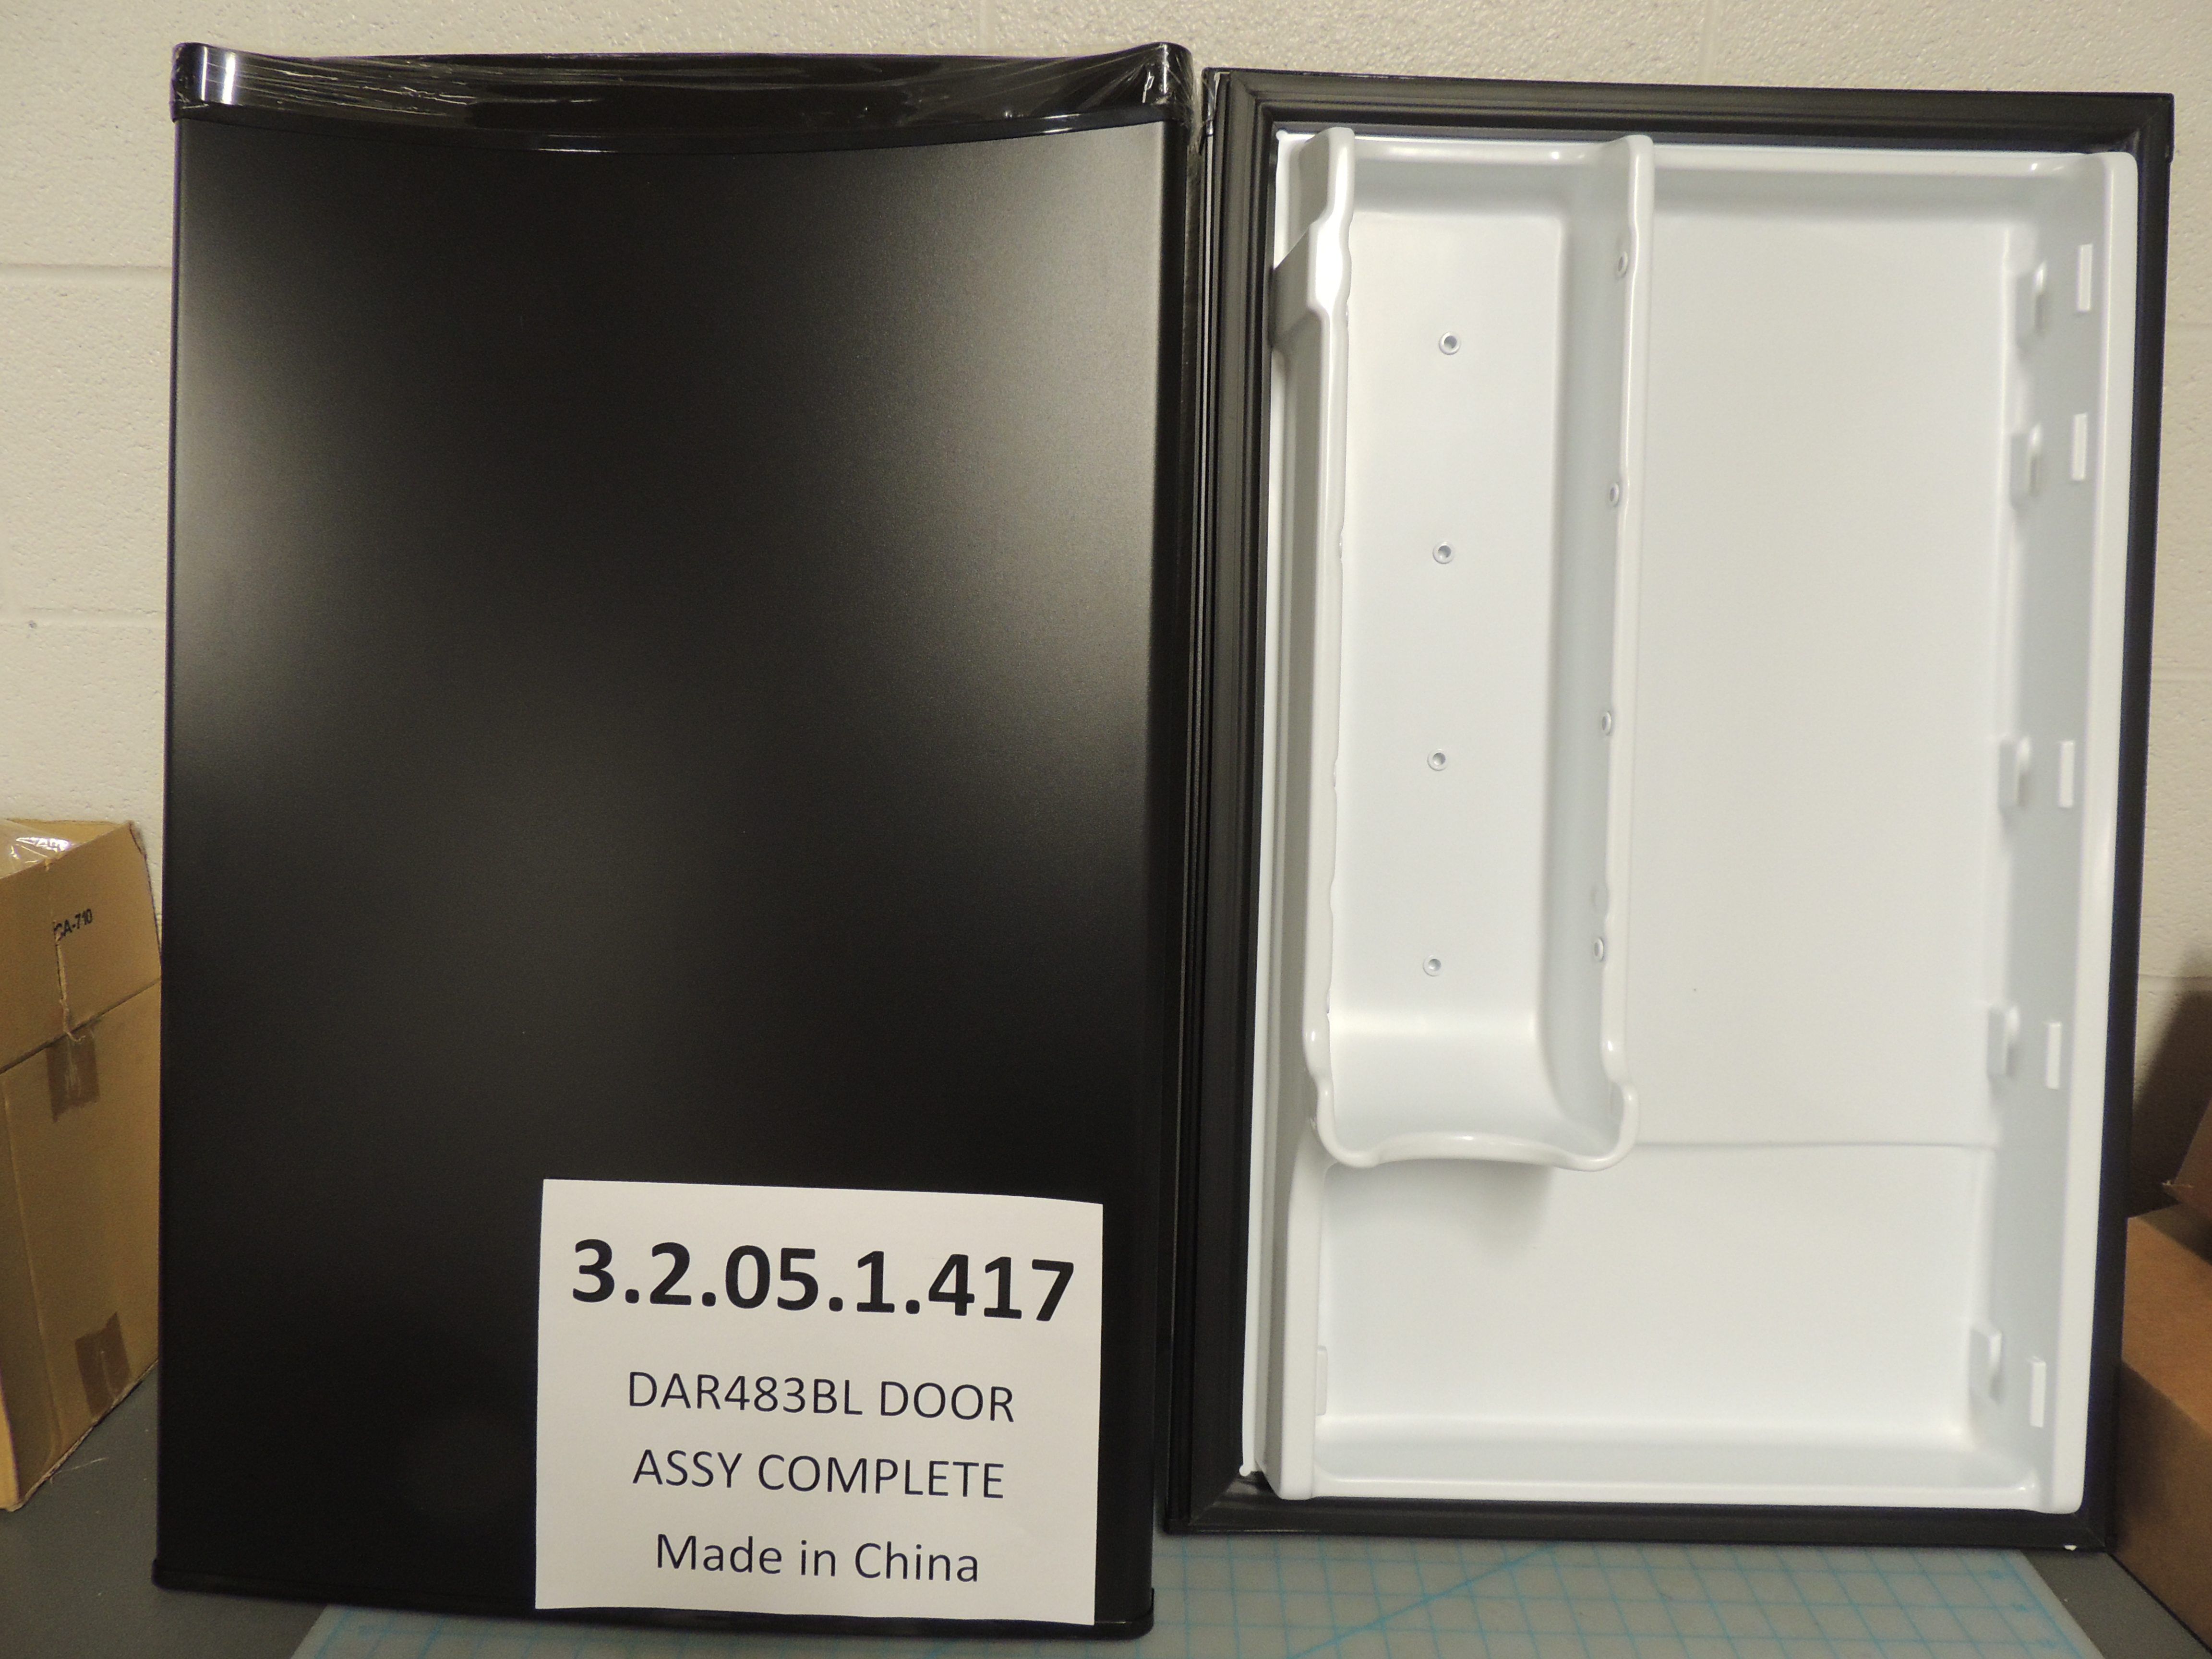 DAR483BL DOOR ASSY COMPLETE